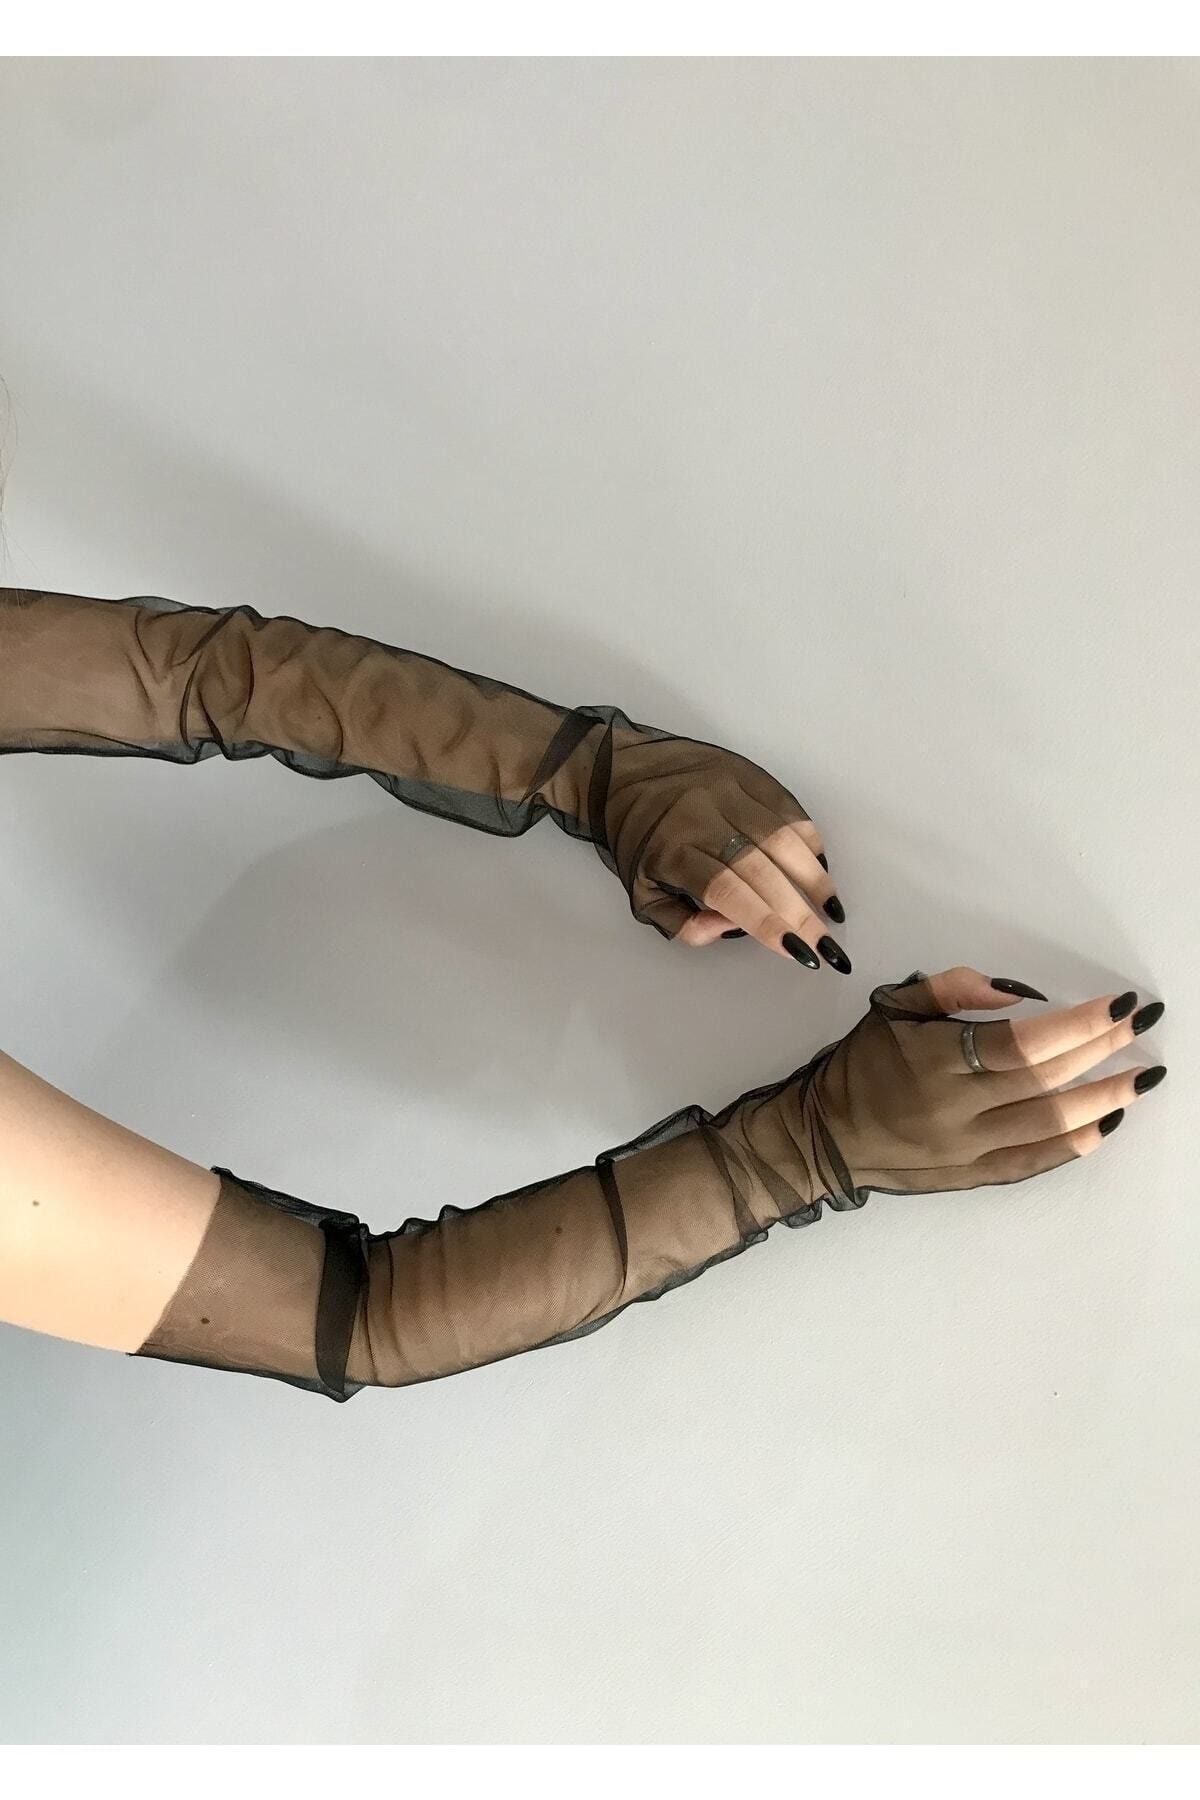 VENÜS MODA by Pınar Siyah Uzun Tül Eldiven Parmaksız Abiye Eldiveni Kostüm Aksesuar